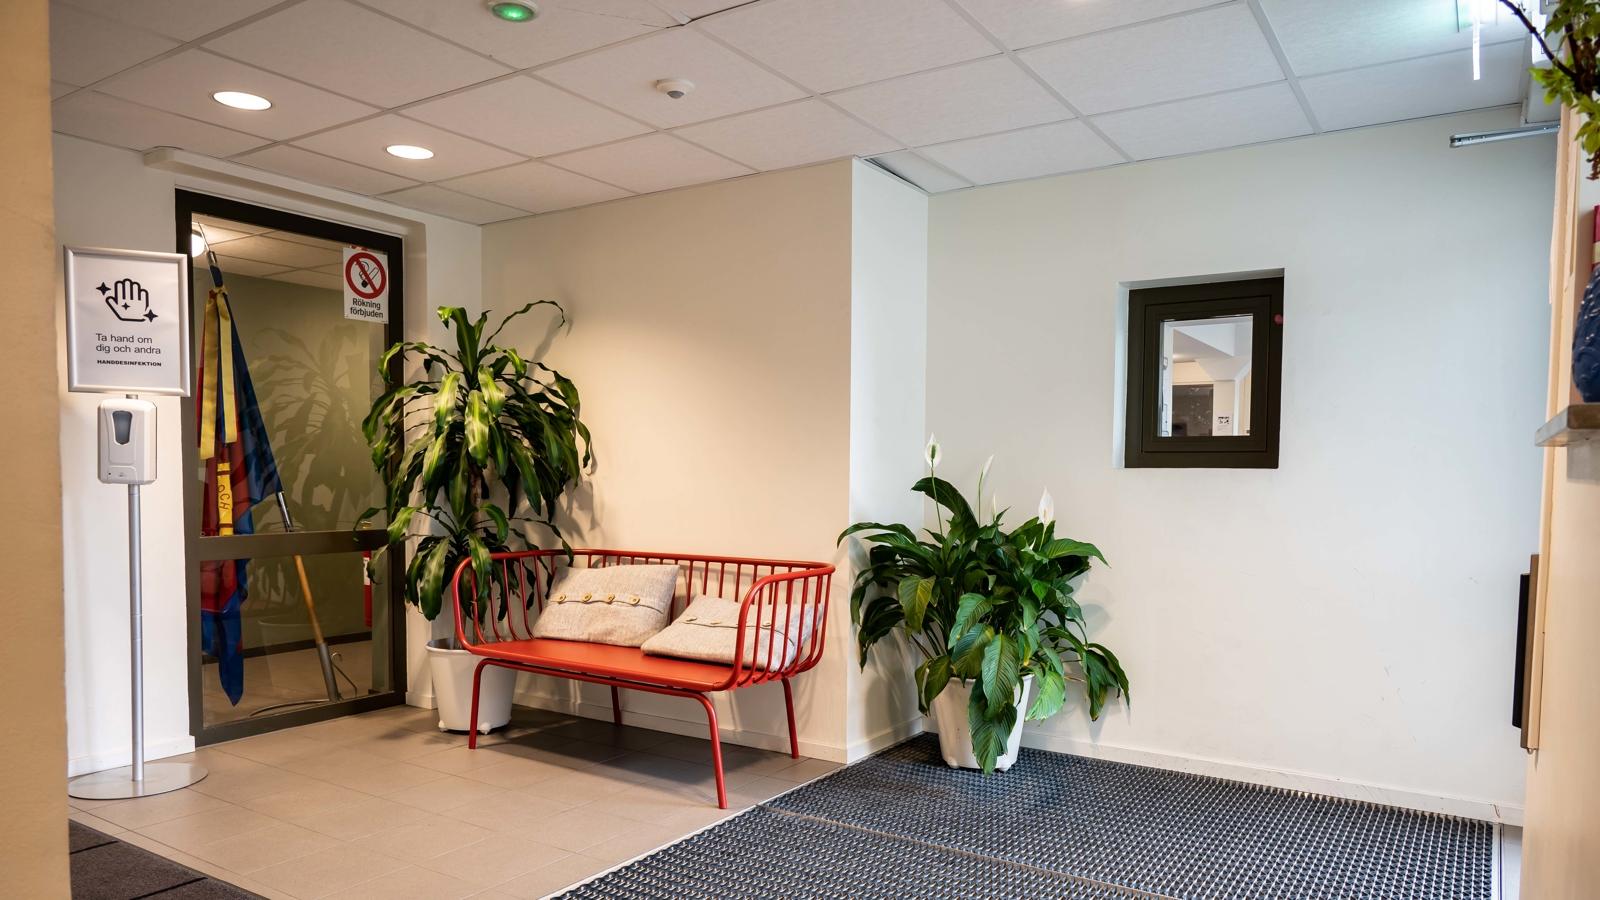 Entré - Till vänster i bilden finns en röd soffa, till höger i bilden på äggen finns en glaslucka som leder in till kontoret. Mittemellan dessa finns en stor grön planta ställd på golvet. 